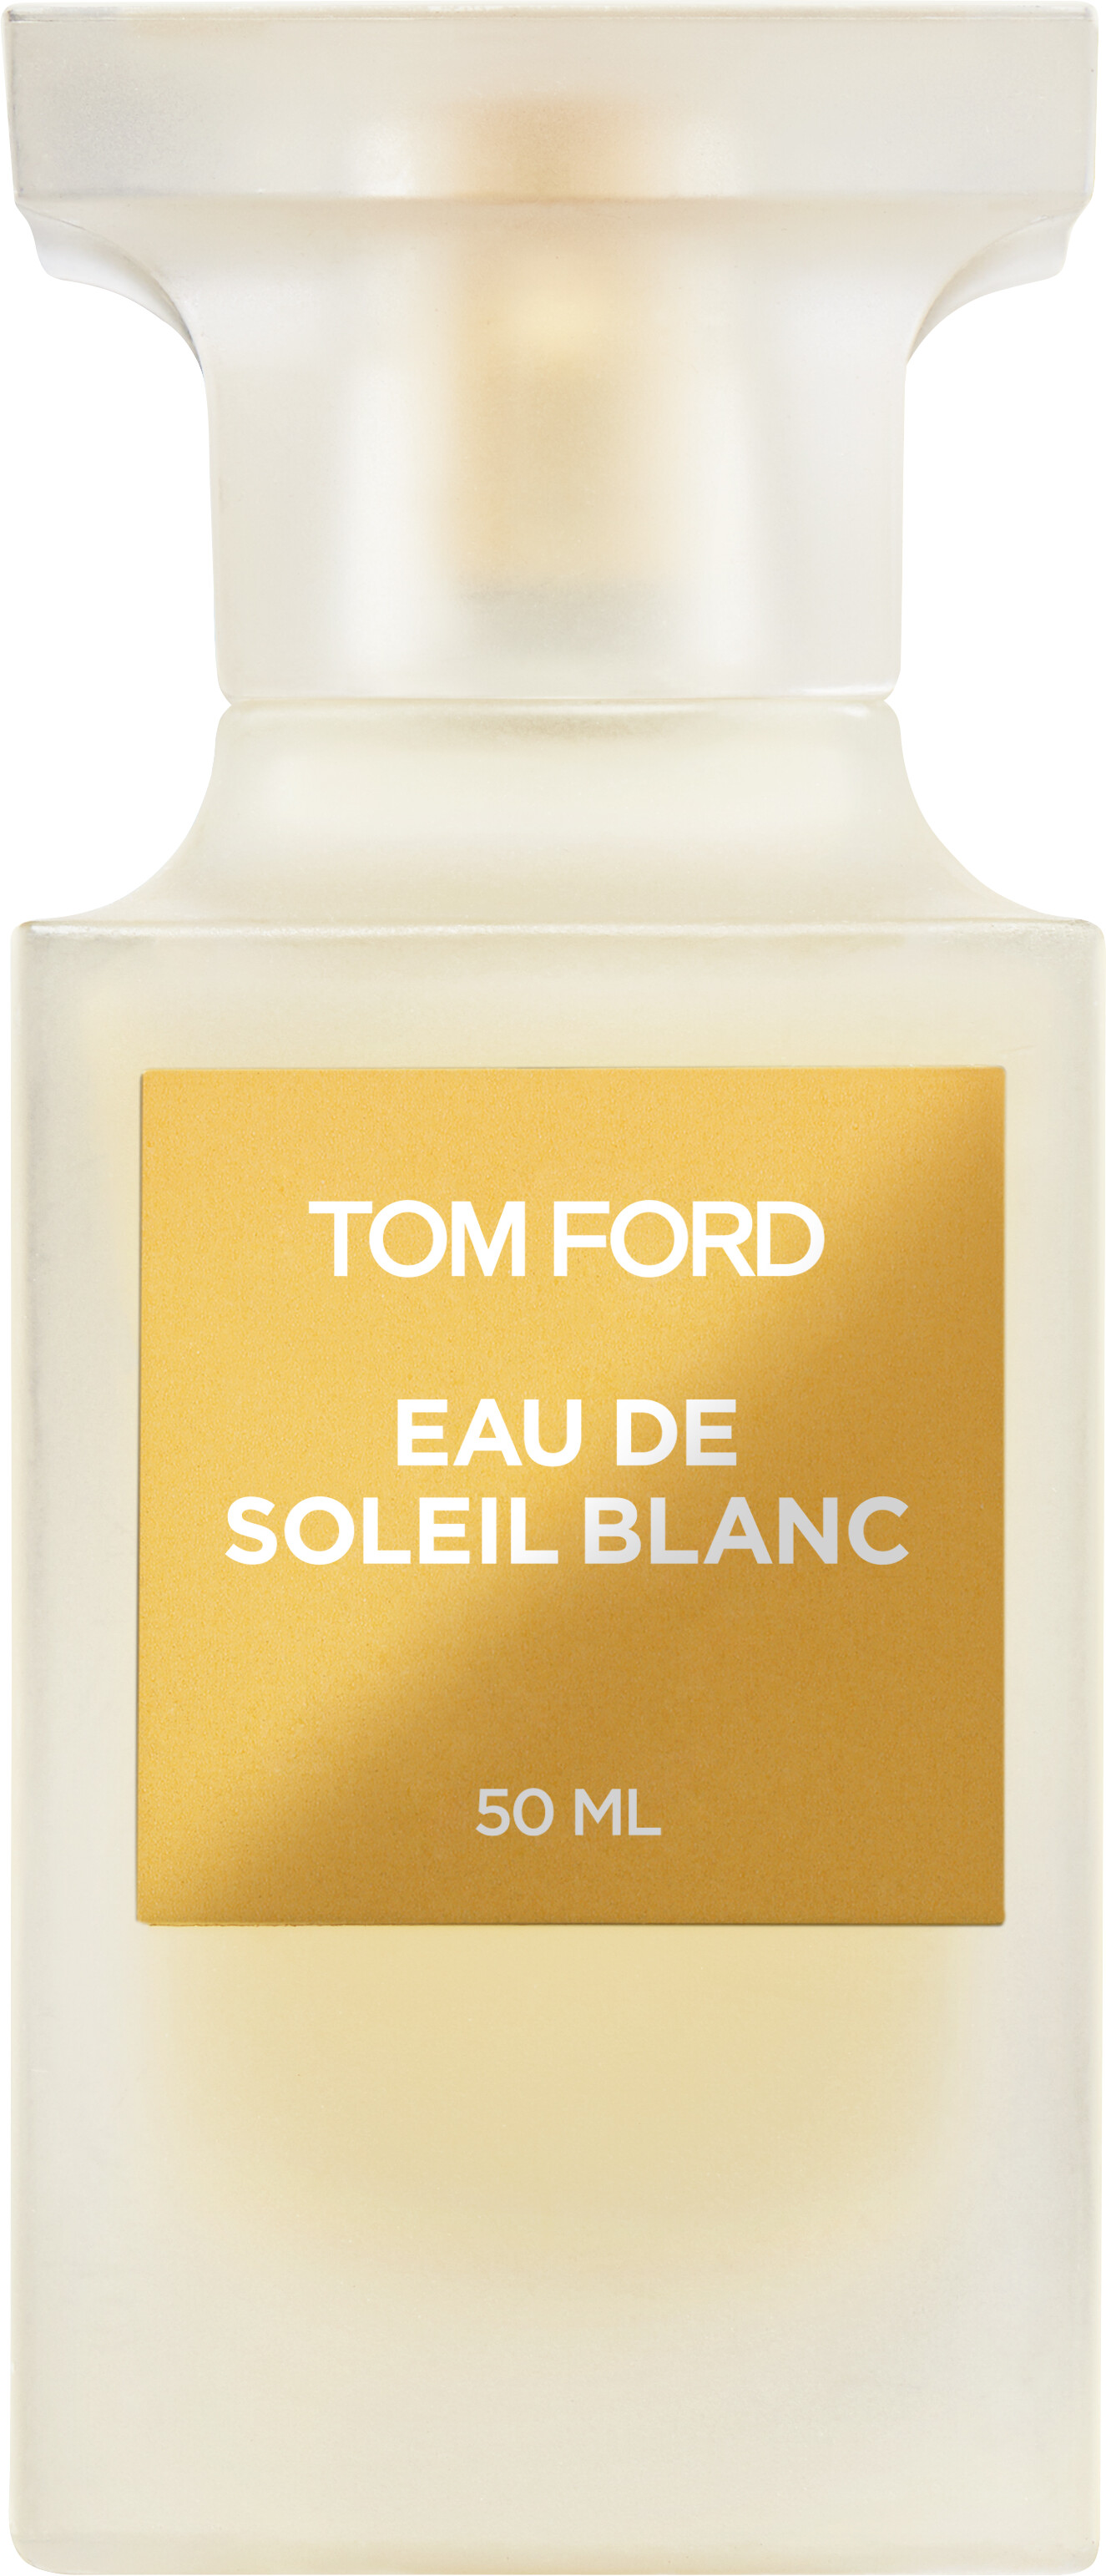 Tom Ford Eau de Soleil Blanc Eau de Toilette Spray 50ml